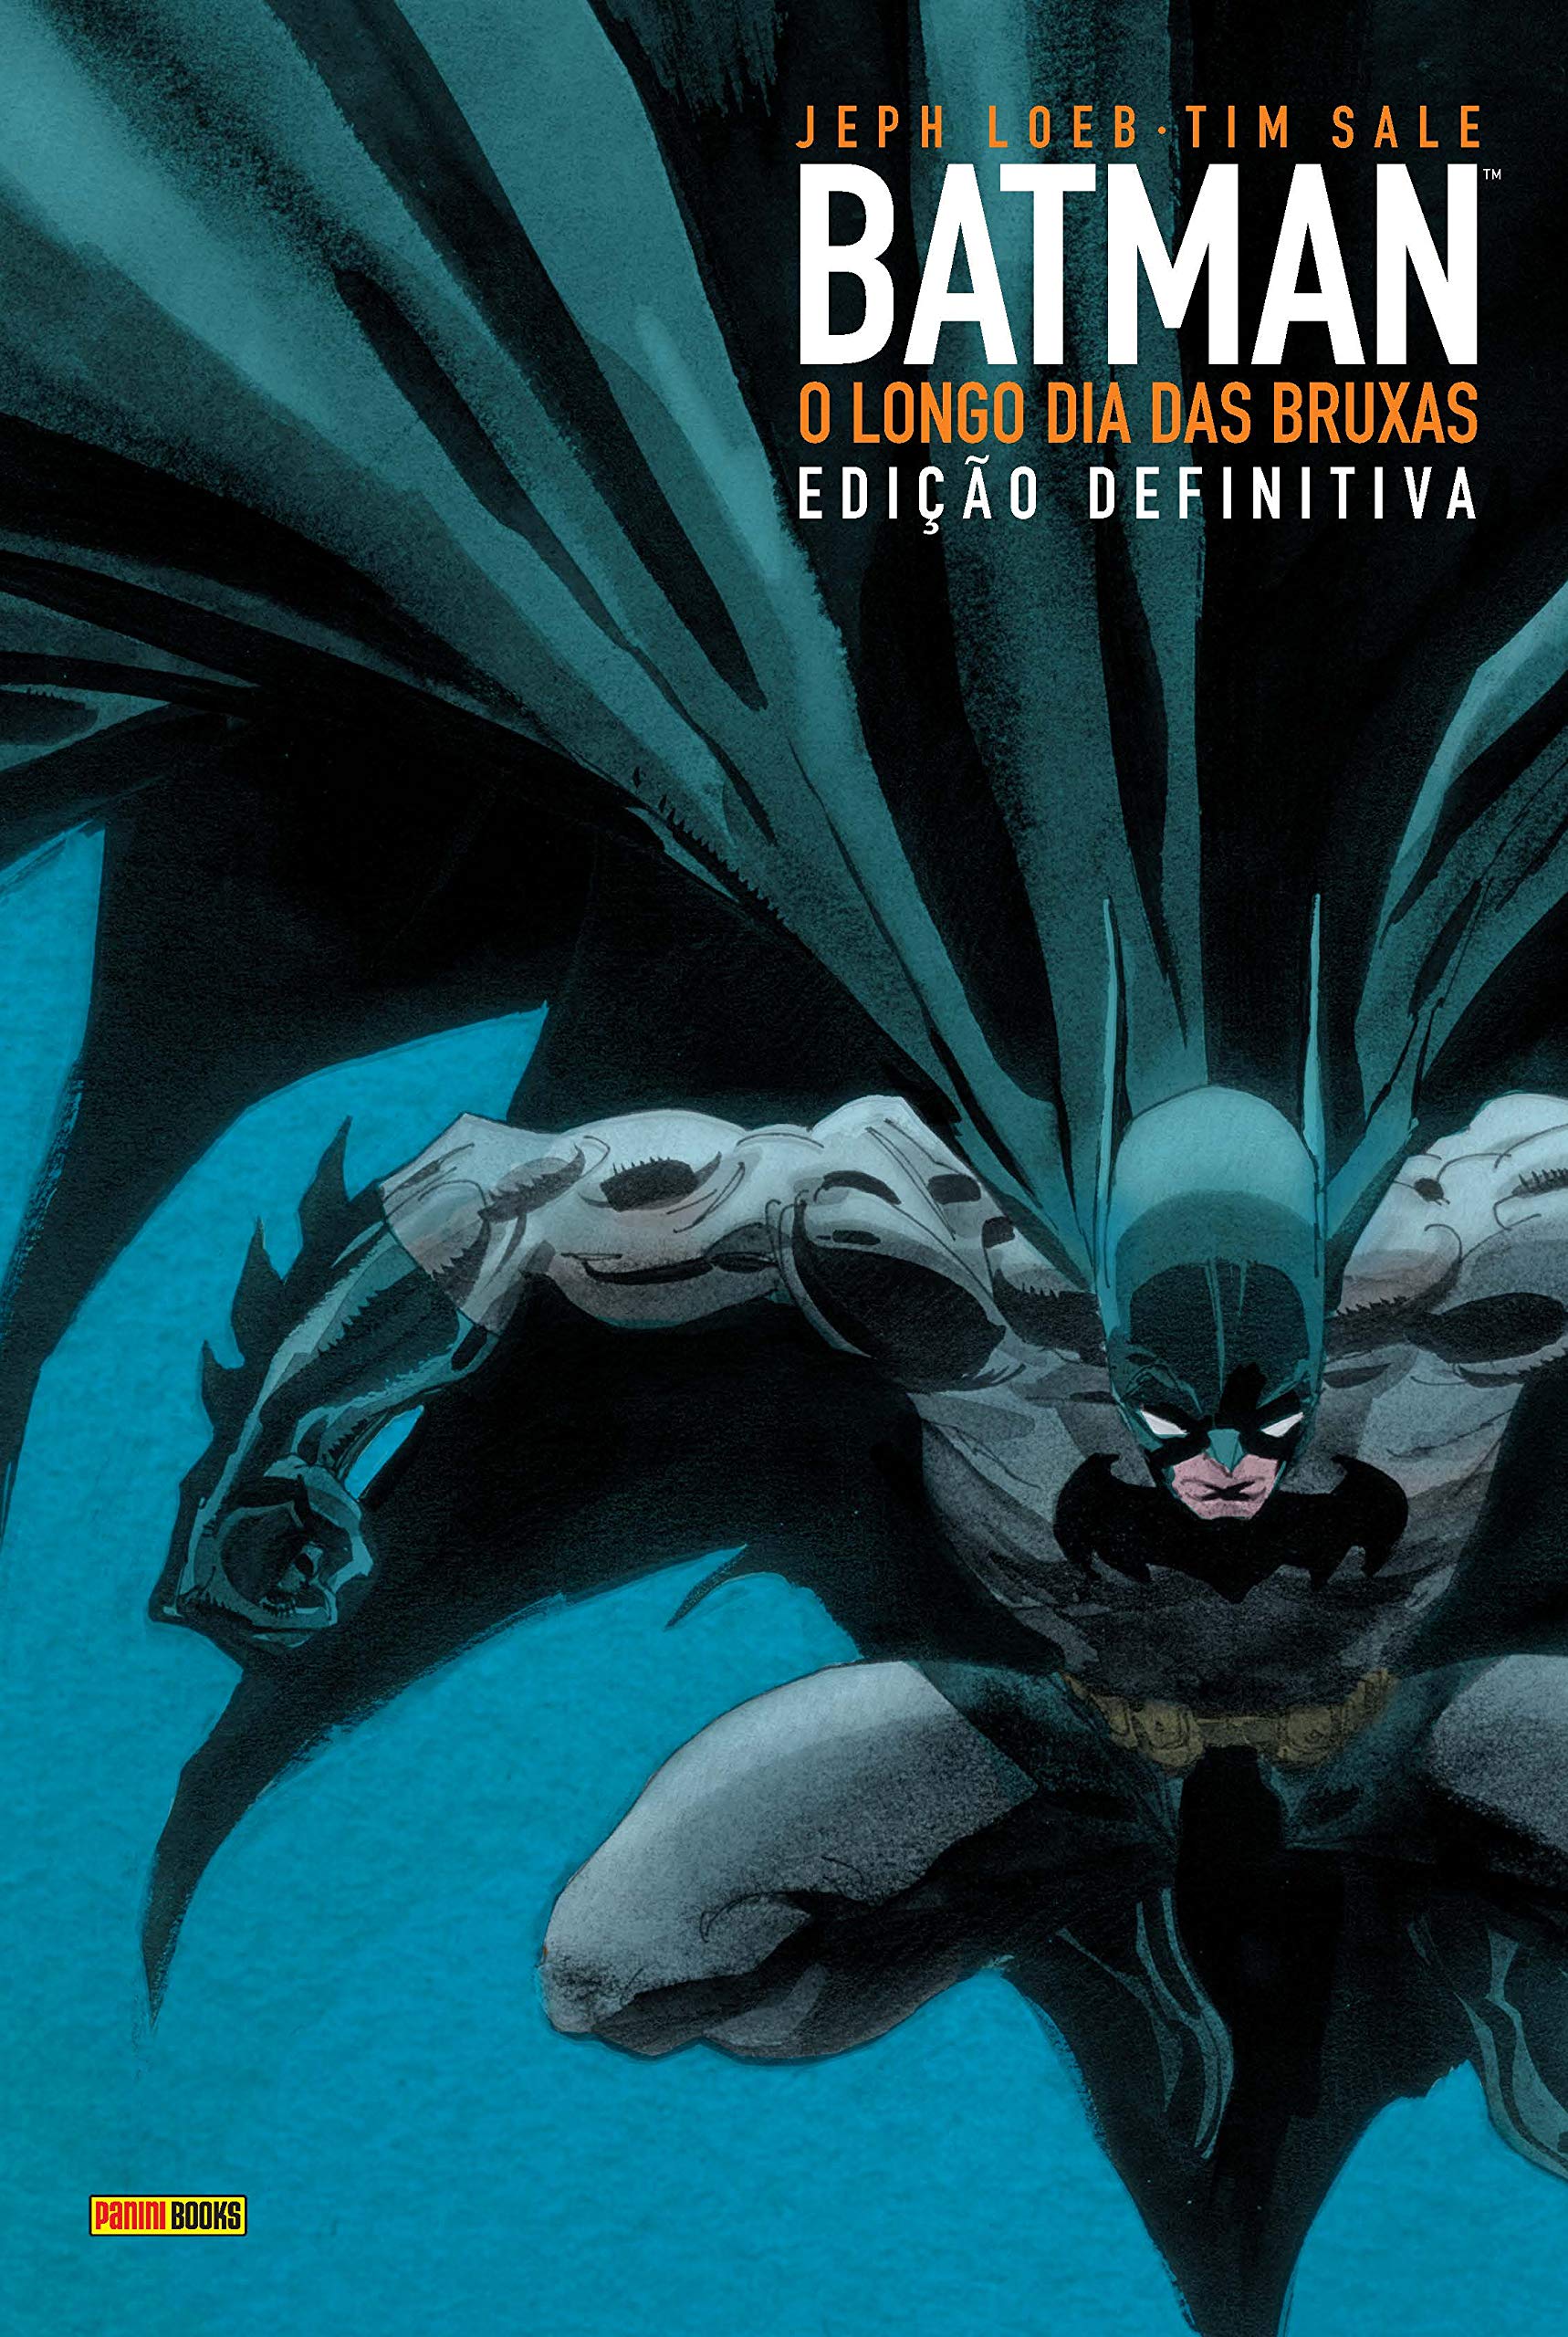 Capa da edição definitiva da HQ 'Batman: O Longo Dia das Bruxas'